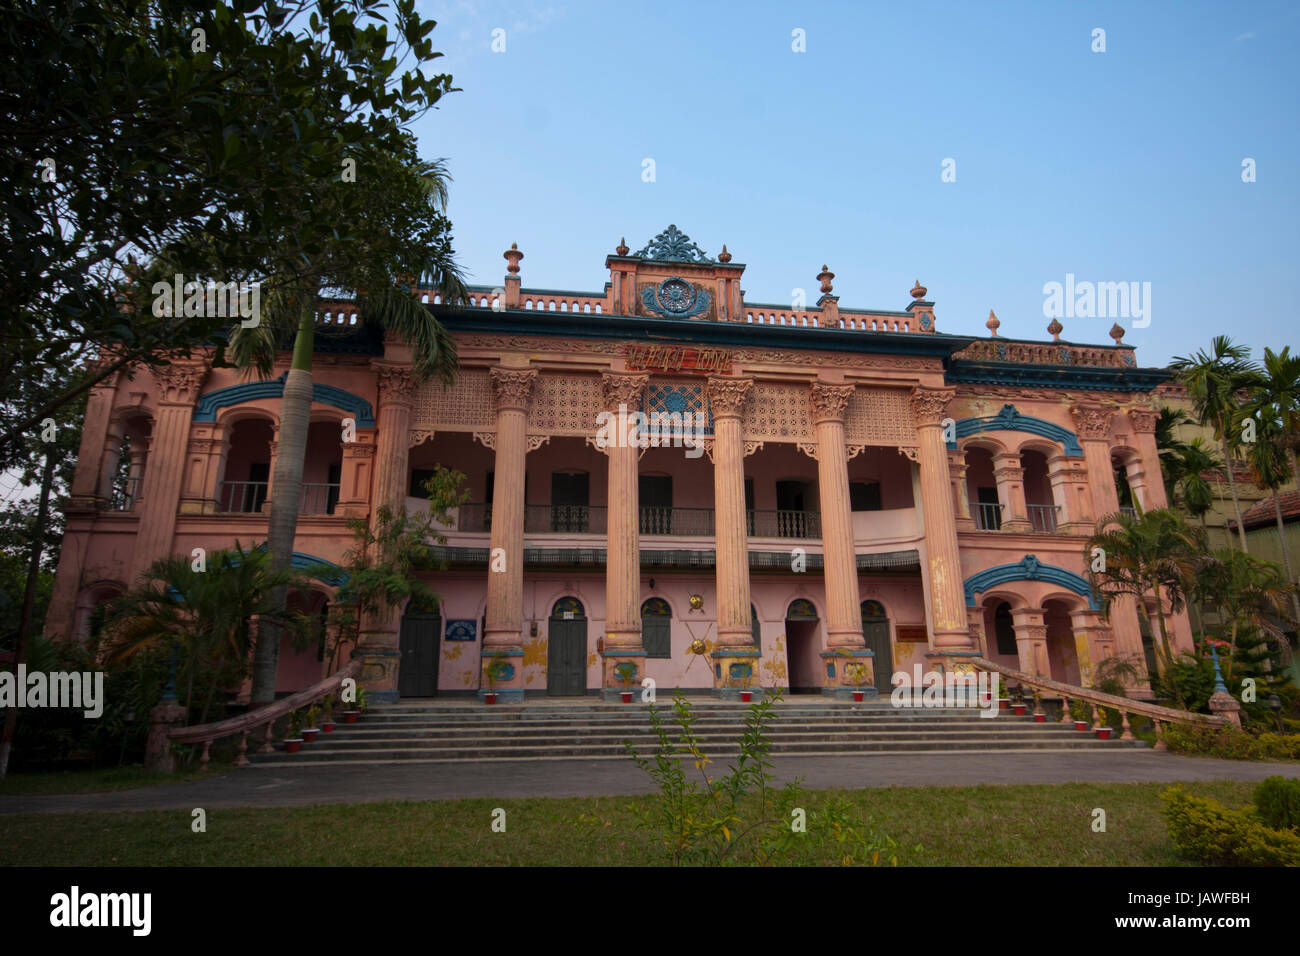 Maharaja Lodge of Mohera Zamider's Palace at Mirzapur in Tangail. Bangladesh. Stock Photo